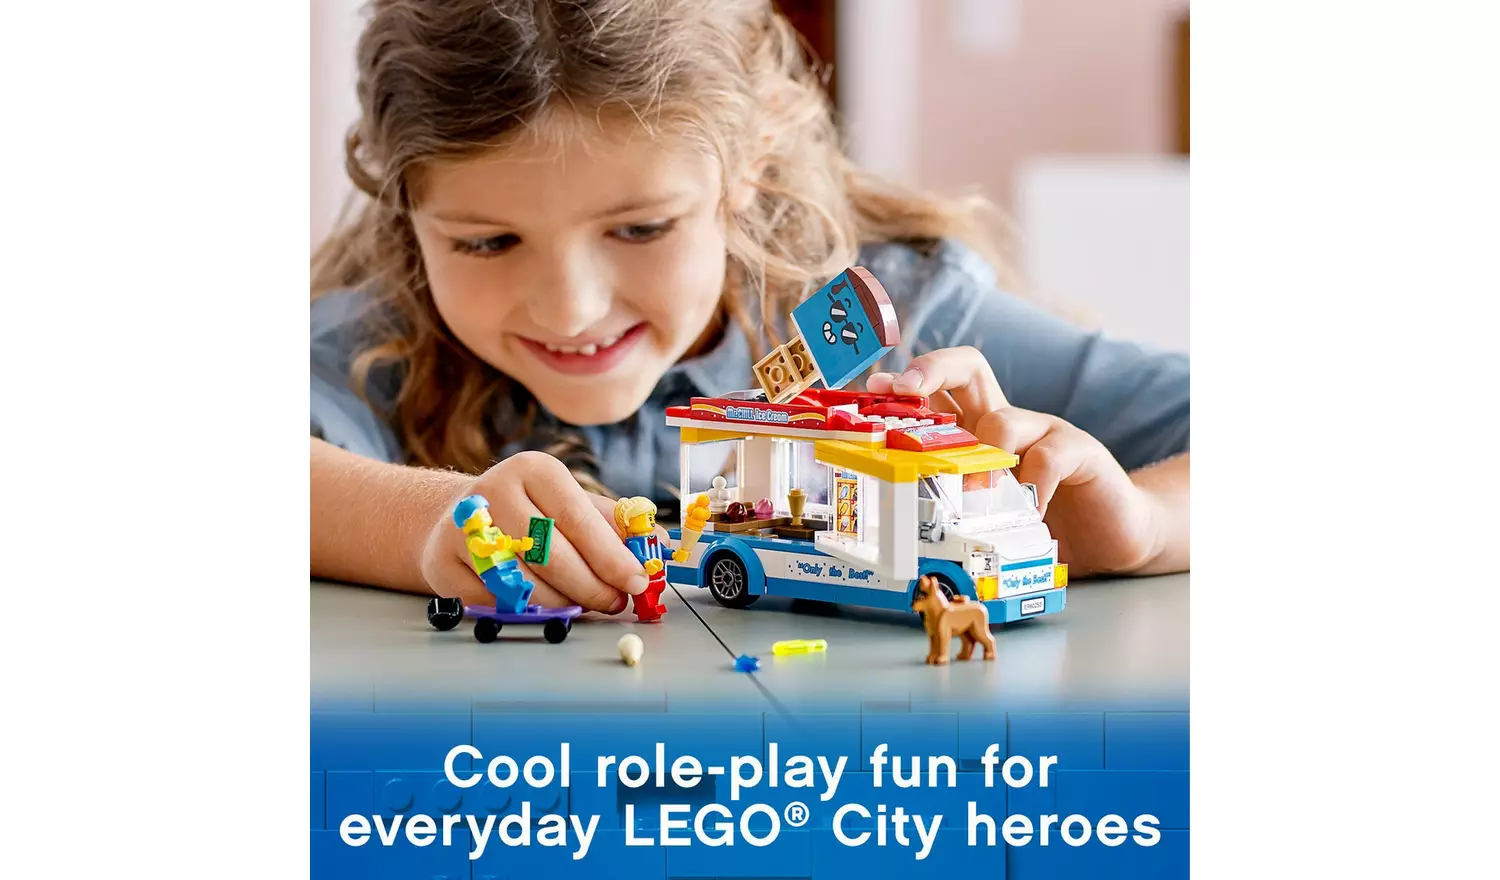 LEGO City Great Vehicles Ice Cream Van Truck Toy 60253